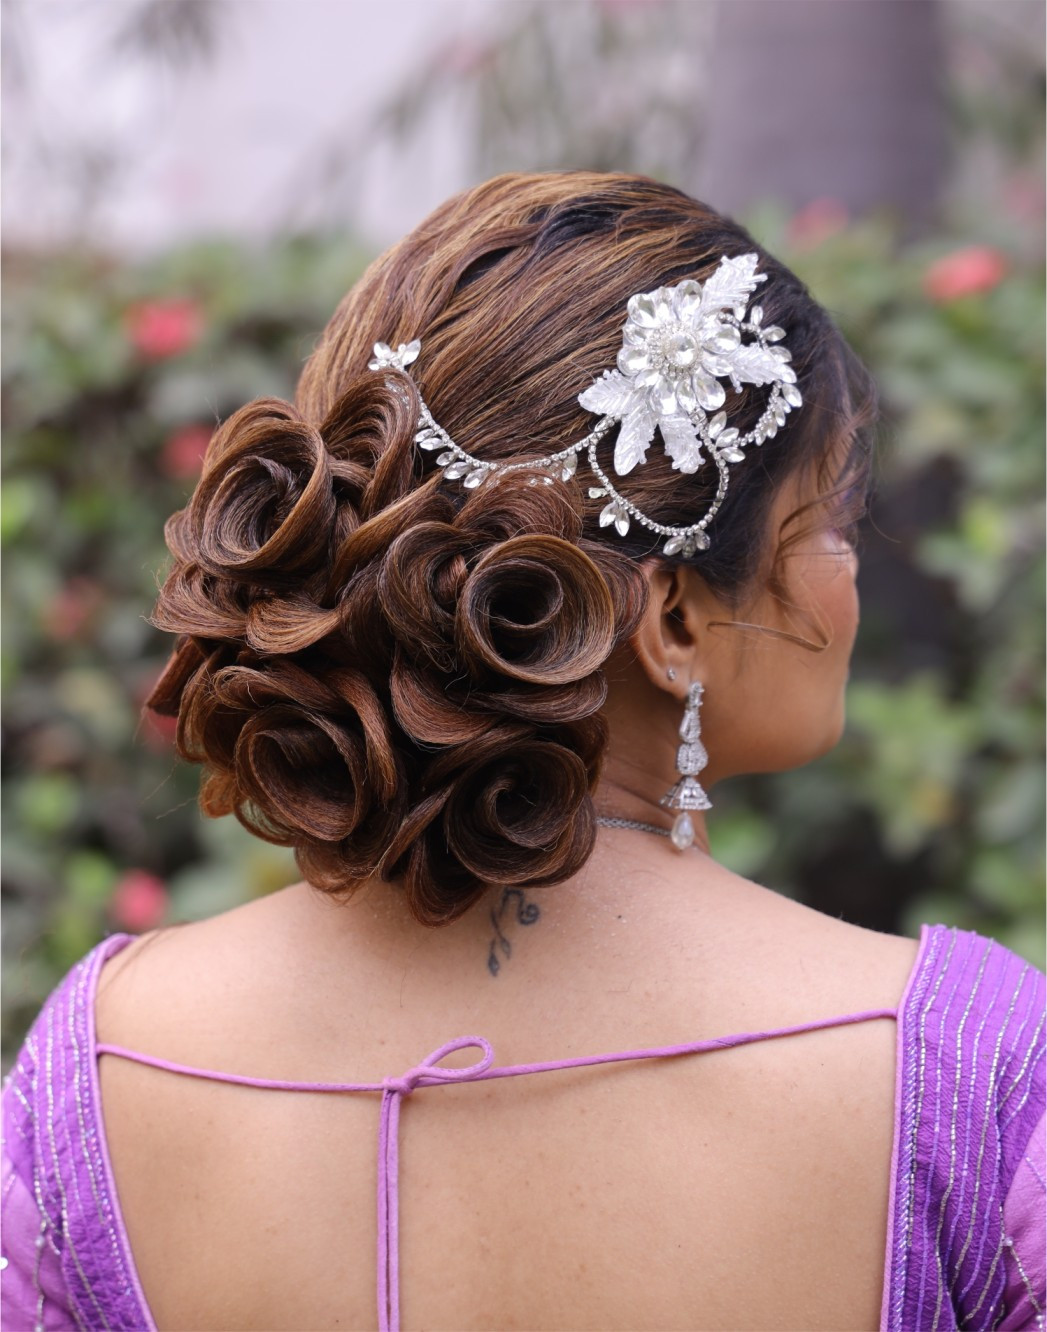 Bun With Flower Hair Style Look - Rl0051